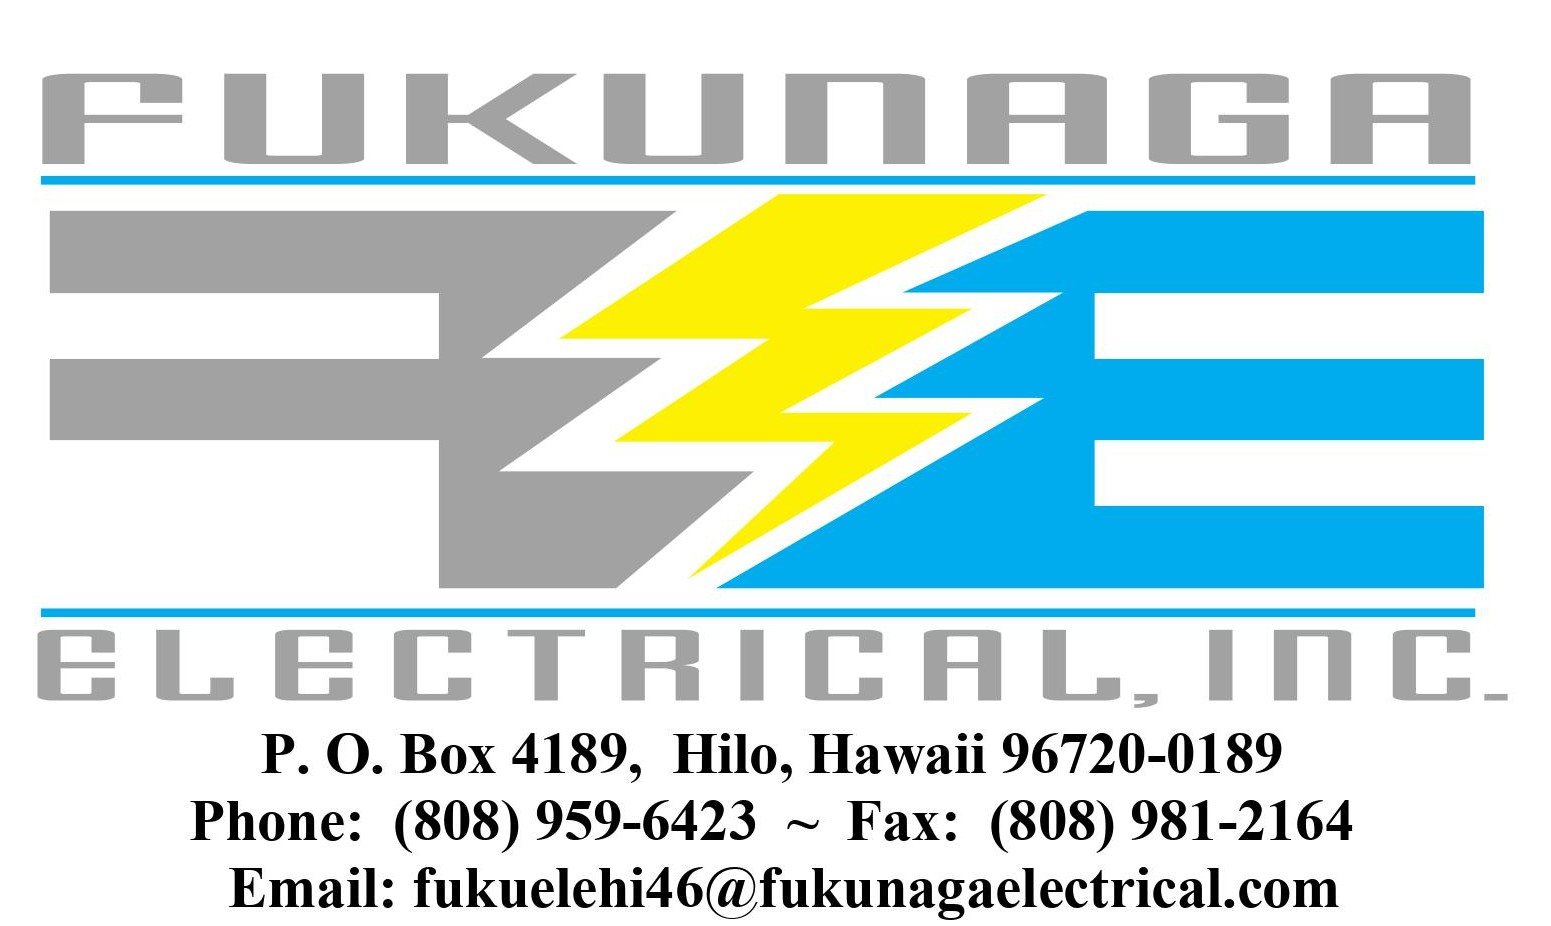 5. Fukunaga Electrical (Tier 4)